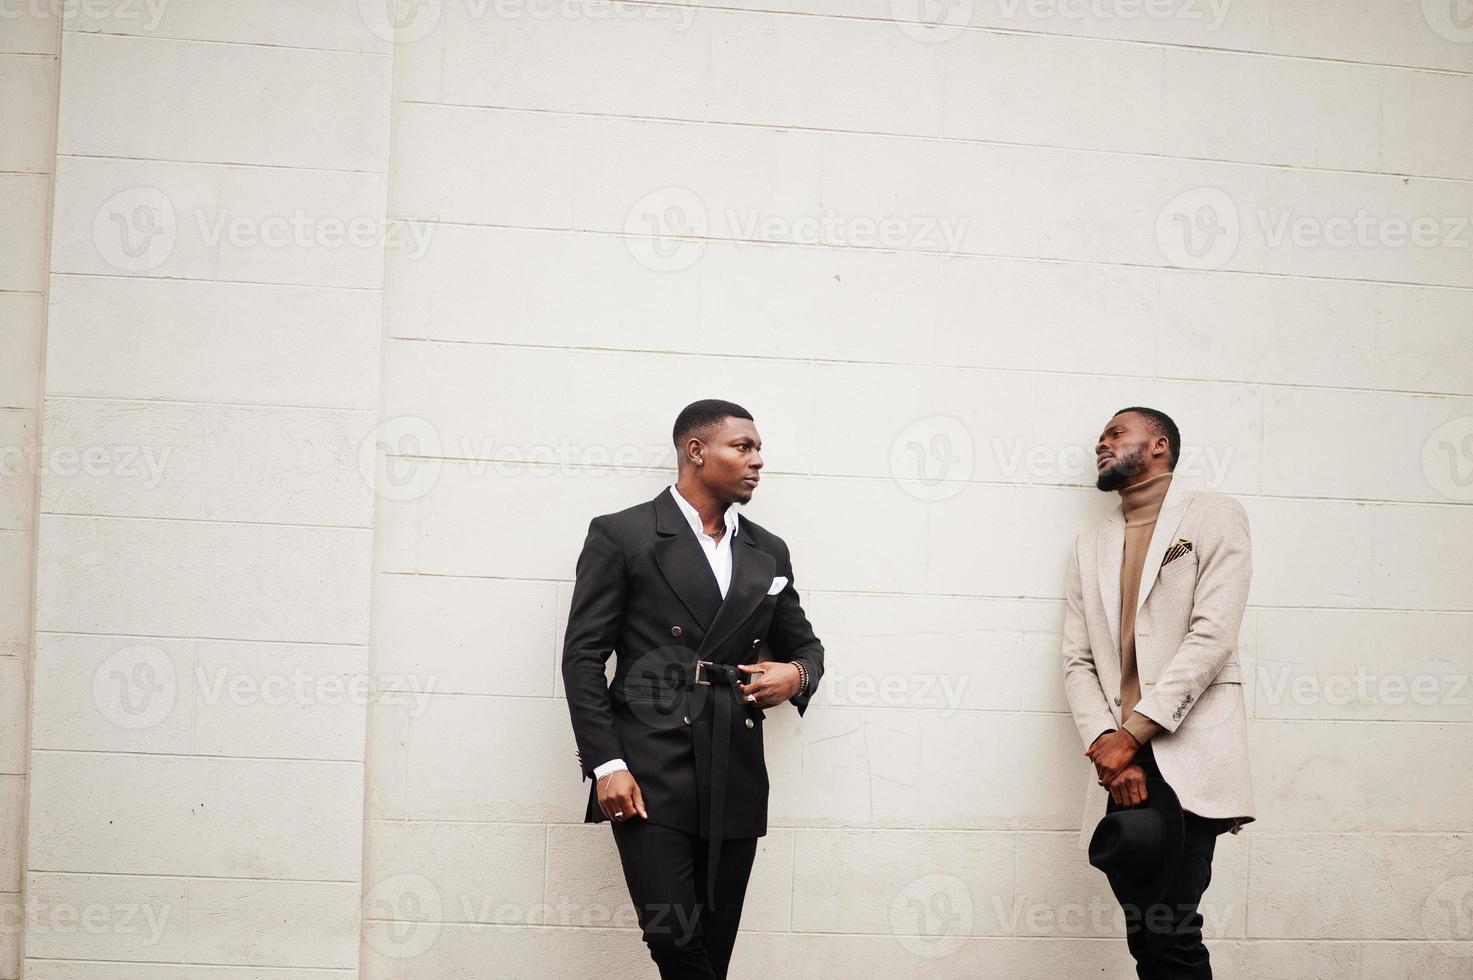 deux hommes noirs de la mode. portrait à la mode de modèles masculins afro-américains. porter un costume, un manteau et un chapeau. photo